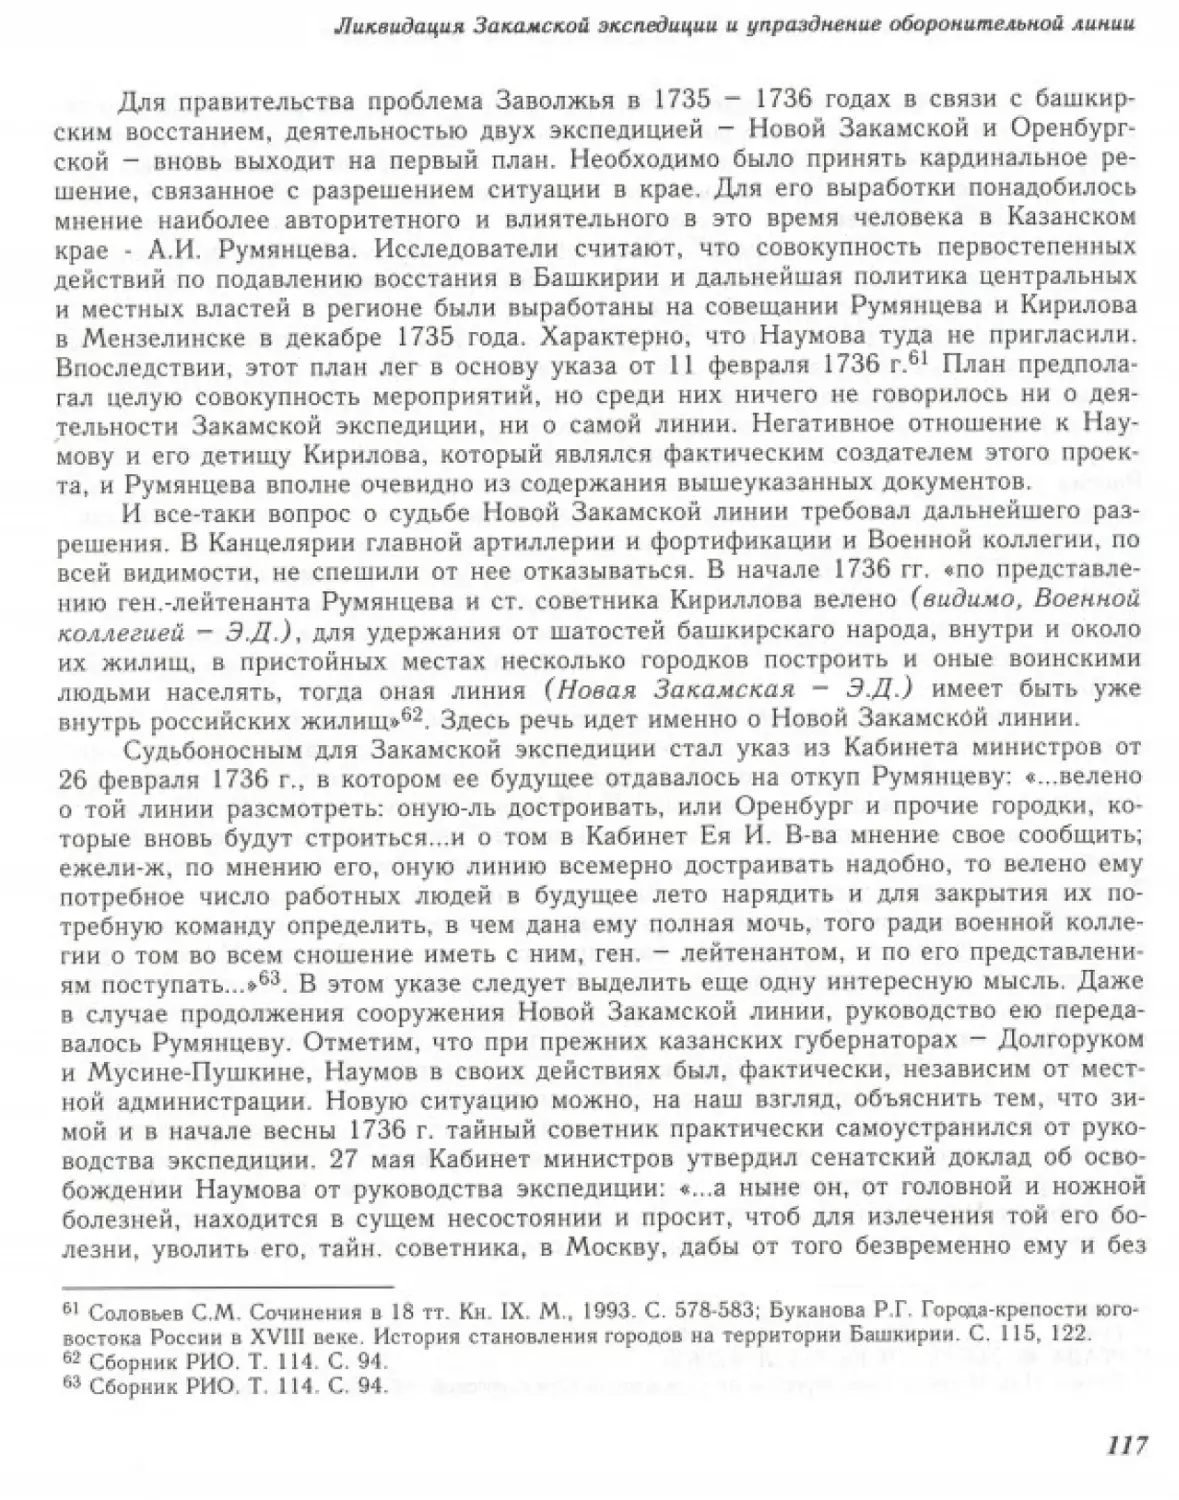 Вал0119.pdf (p.118)